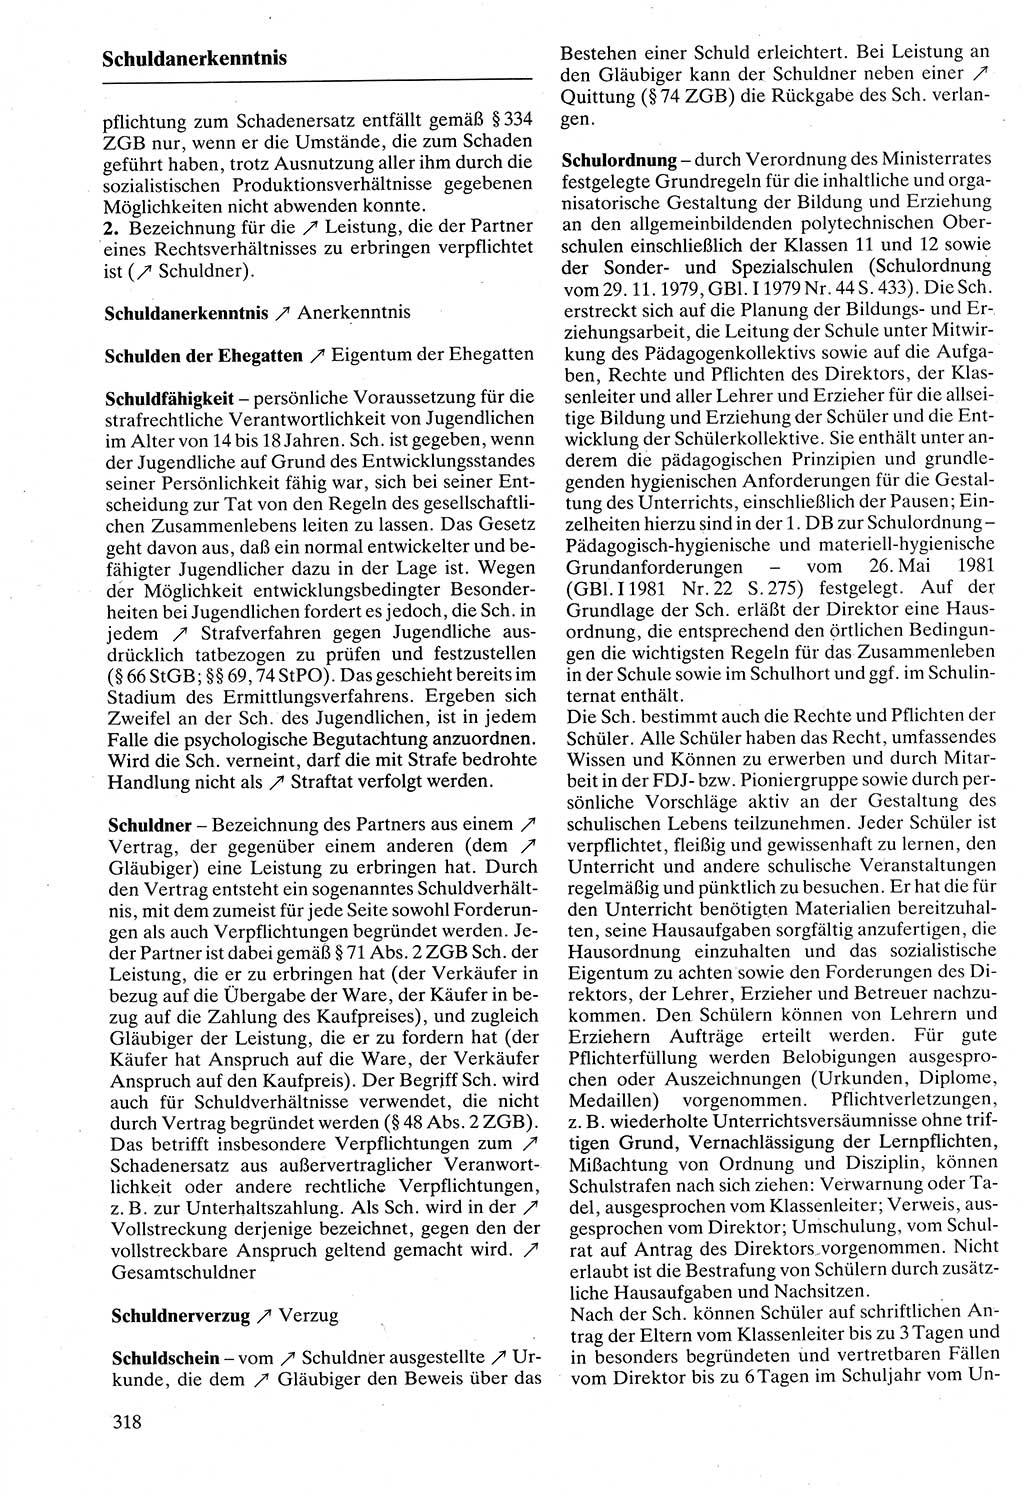 Rechtslexikon [Deutsche Demokratische Republik (DDR)] 1988, Seite 318 (Rechtslex. DDR 1988, S. 318)